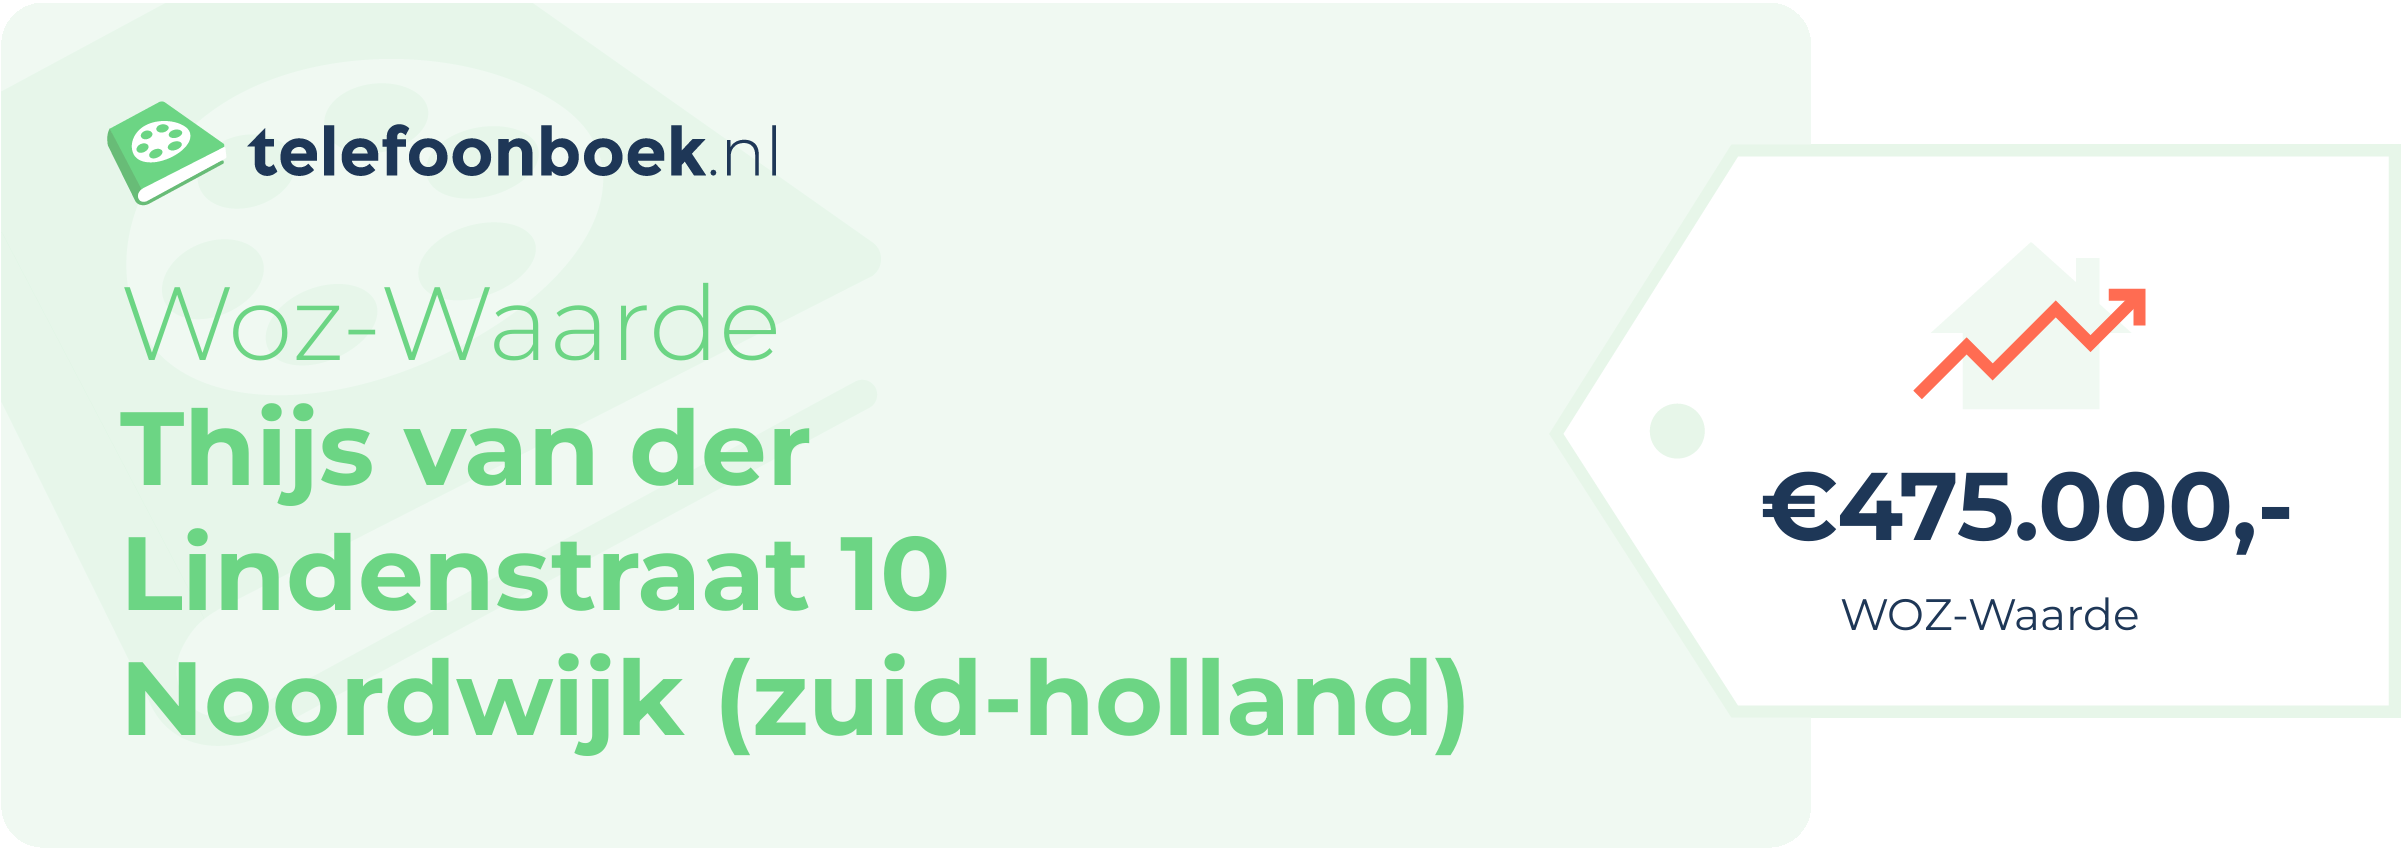 WOZ-waarde Thijs Van Der Lindenstraat 10 Noordwijk (Zuid-Holland)